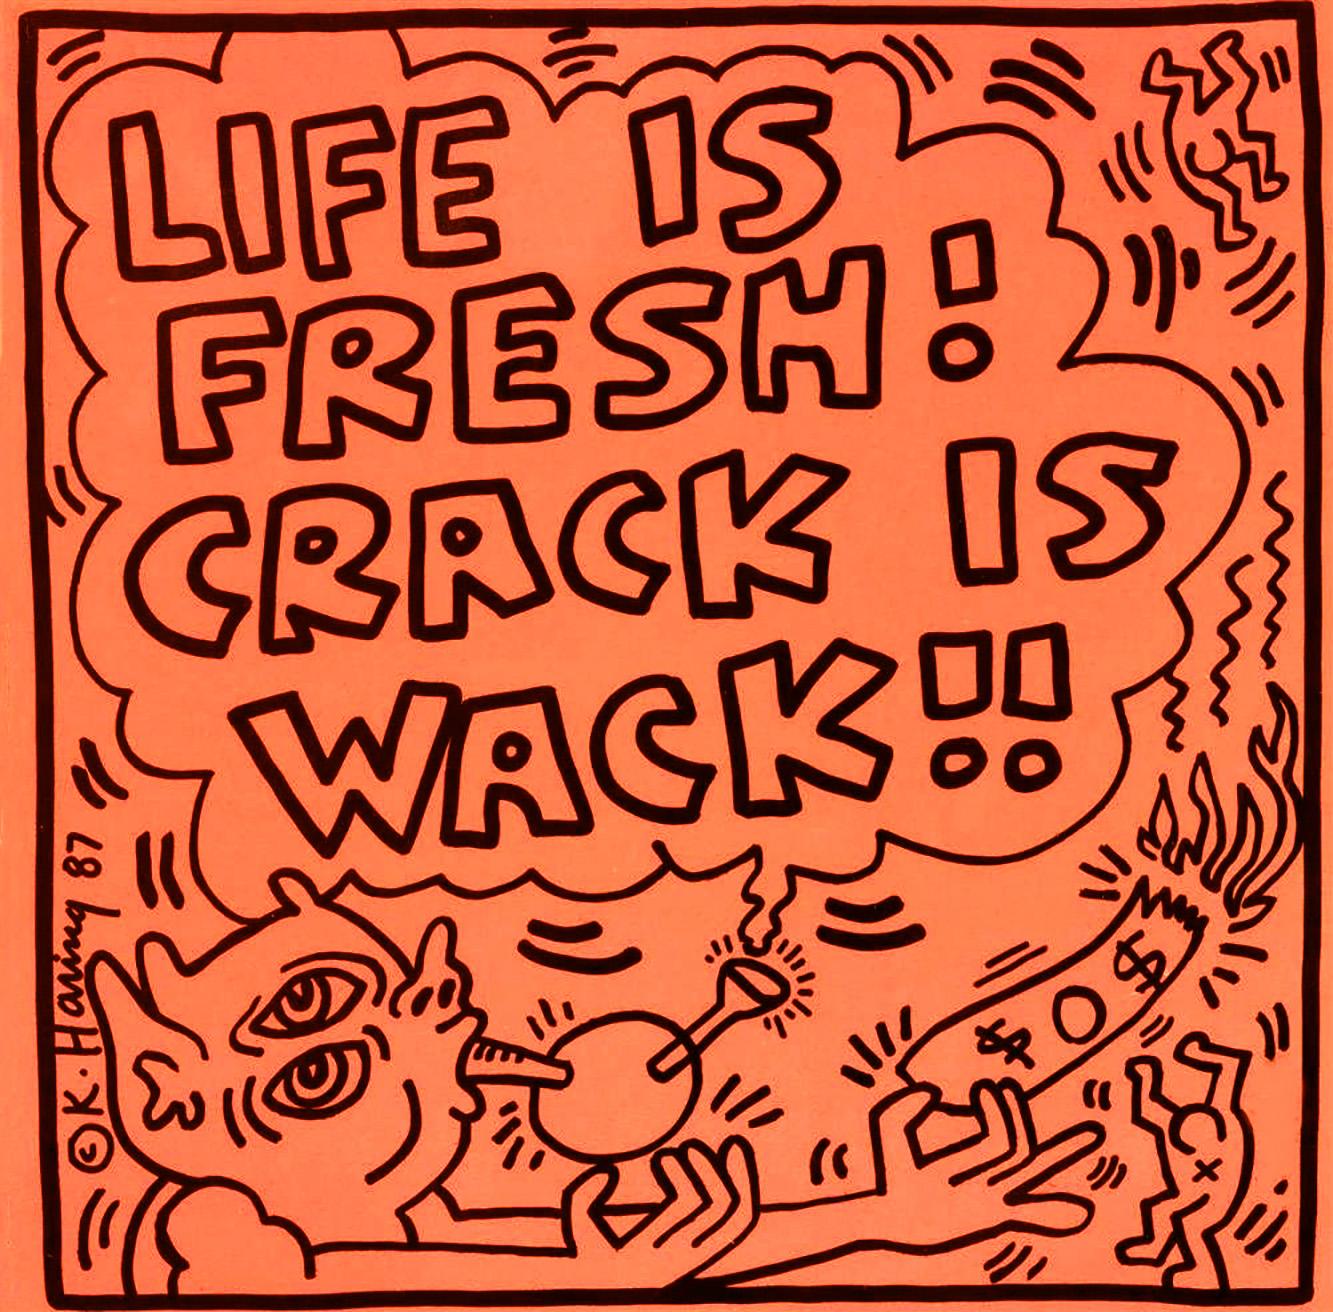 Keith Haring: „Lebens ist frisch“ Crack ist abgefahren! 1987 
Seltenes Album aus den 1980er Jahren mit Original-Kunstwerken von Keith Haring. 

Die Titelbildillustration von Haring:: die hier für seinen damaligen Freund Bipo angefertigt wurde:: ist